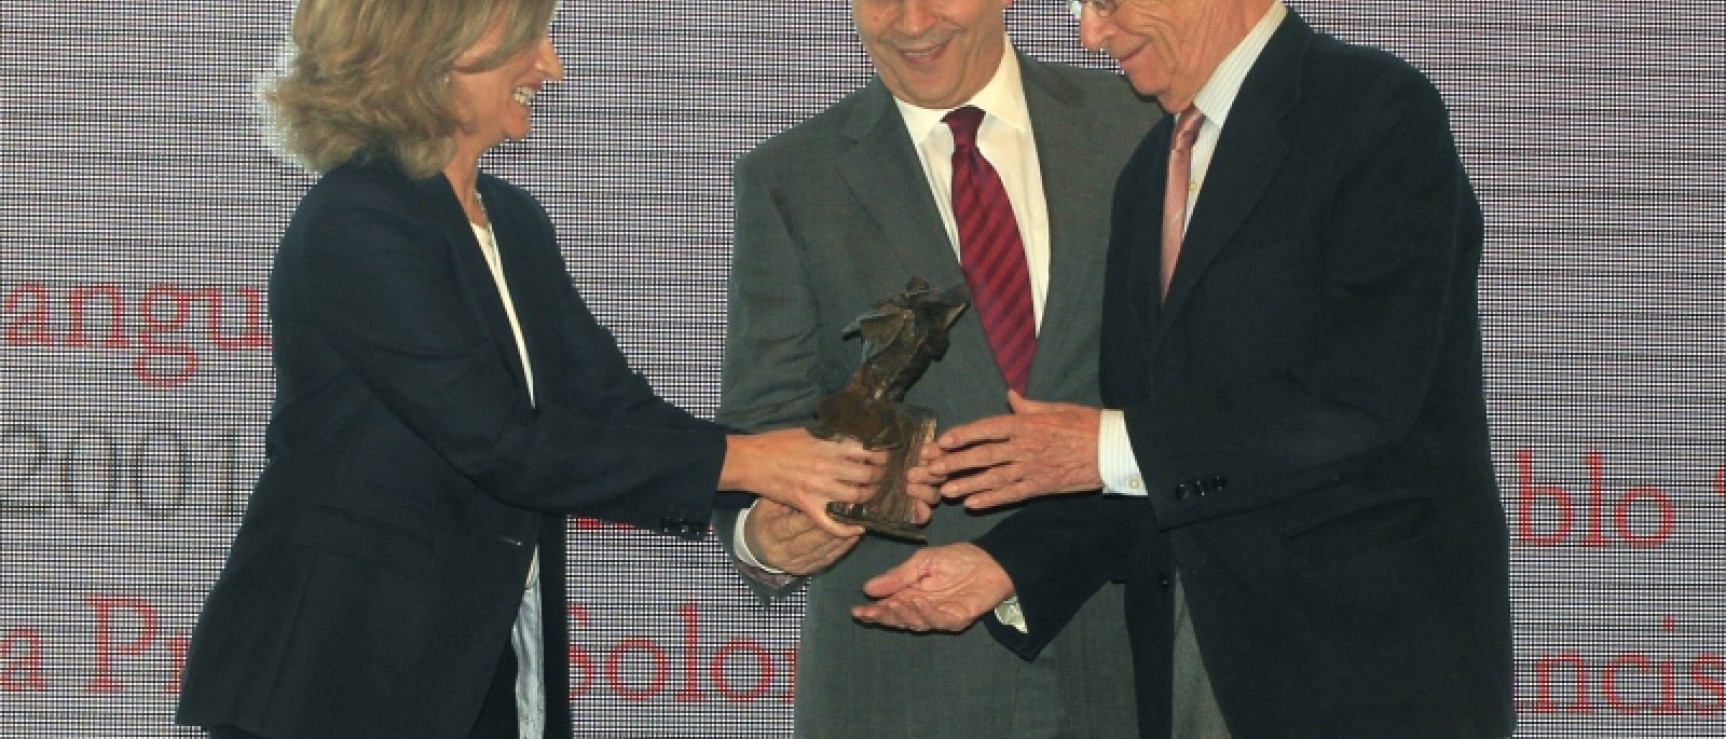 Rosalina Díaz y José Ignacio Wert entregan el Premio Antonio de Sancha a Emilio Lledó.